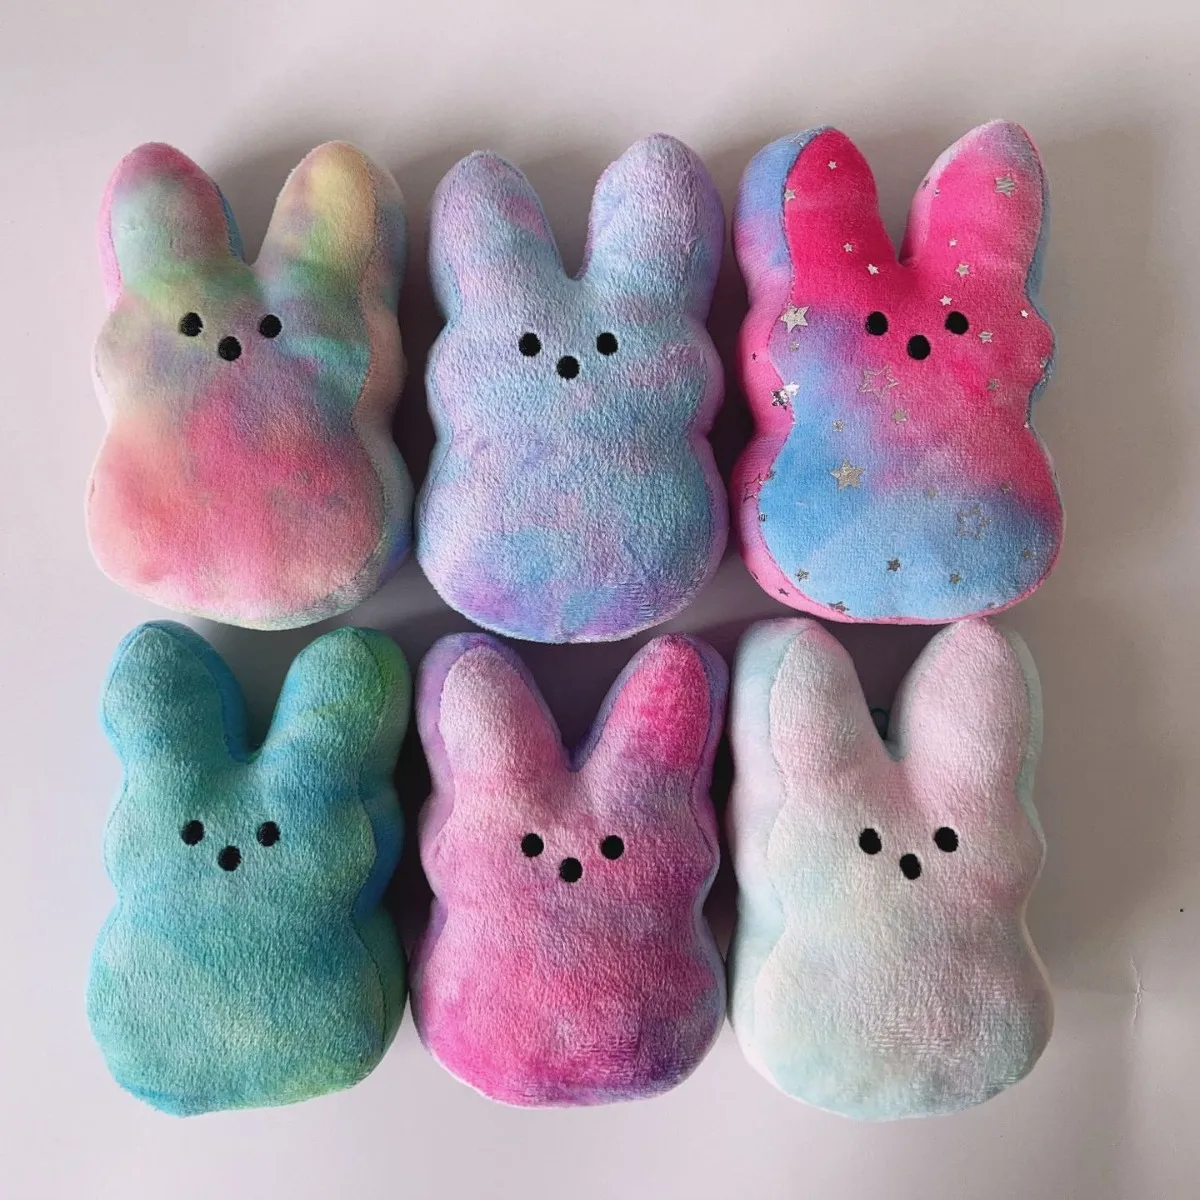 Nuovo prodotto caldo di e-commerce della bambola colorata del coniglio di Pasqua del coniglio di Peeps. Commercio all'ingrosso della bambola della peluche di PEEPS